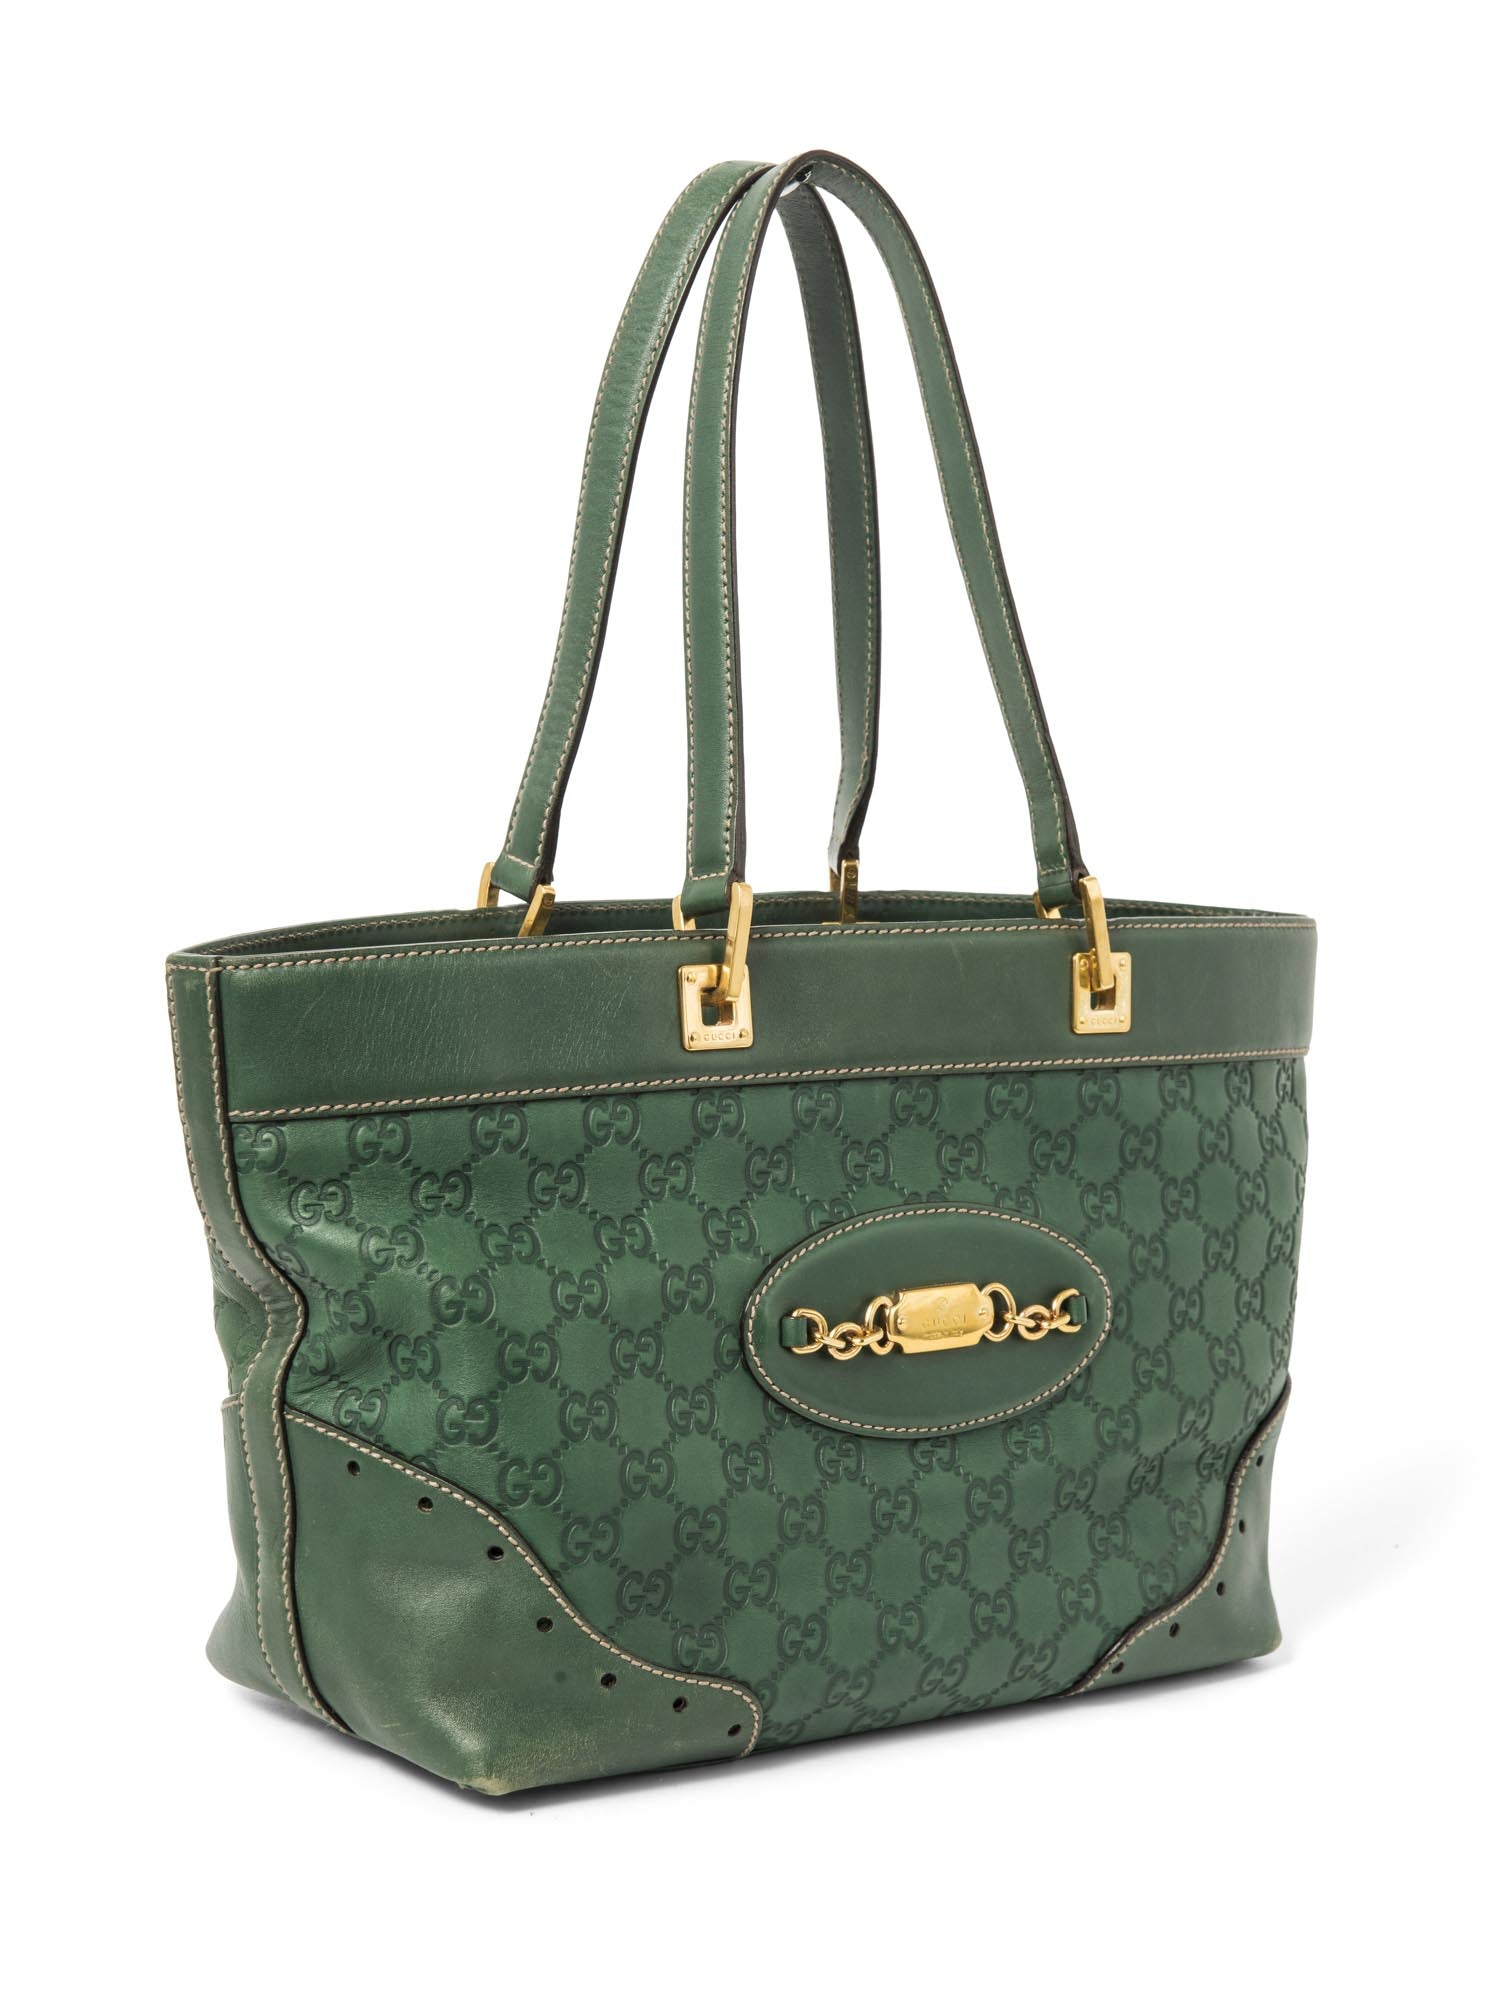 Premium Bags Store Uk Usa | Tote bag patters, Gucci bag, Bags